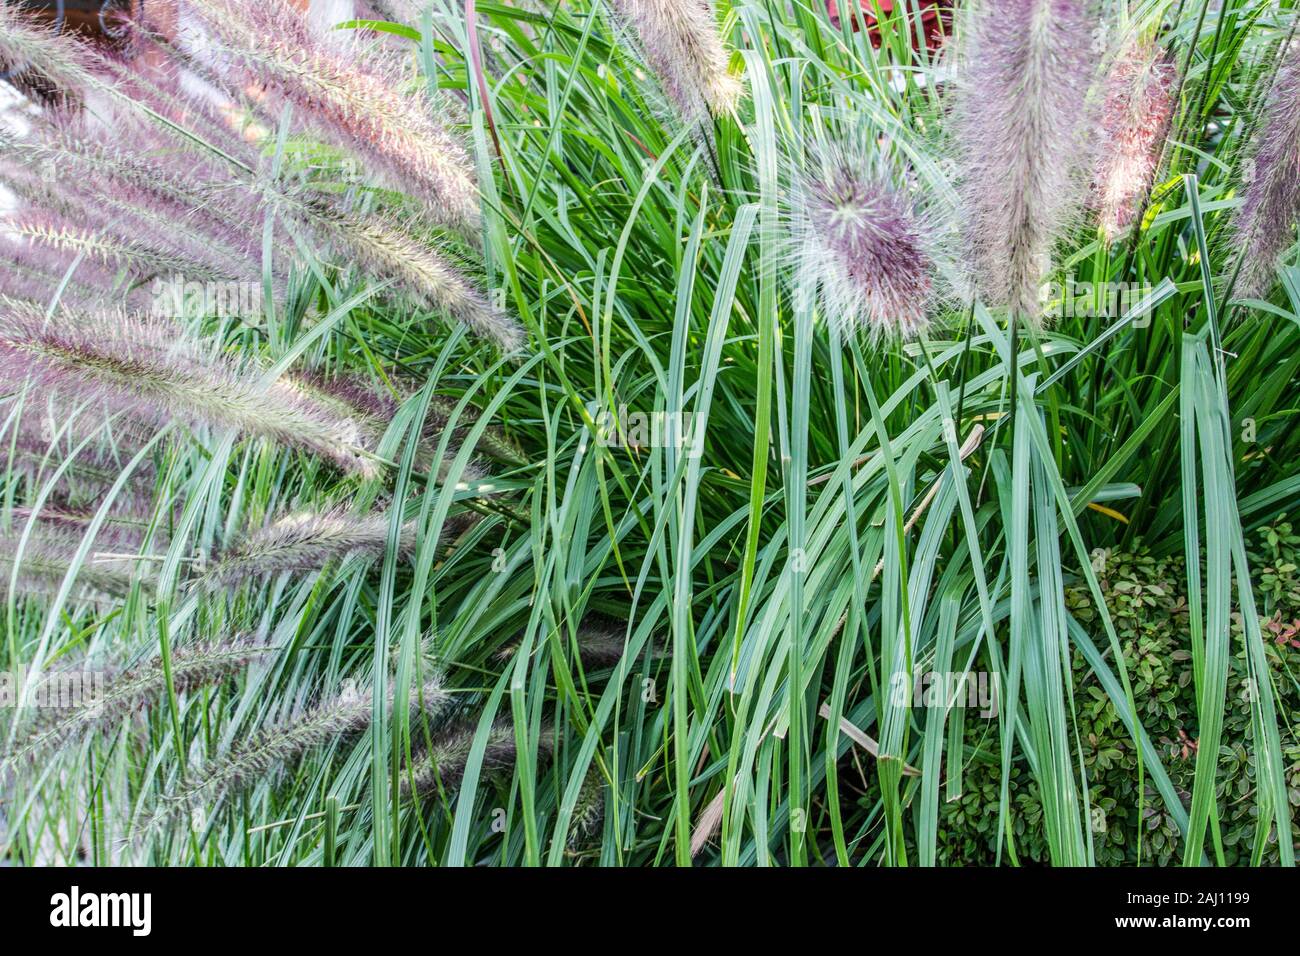 Césped ornamental. Fuente grass es un césped ornamental perenne resistente utilizado en los astilleros de paisajismo. Foto de stock